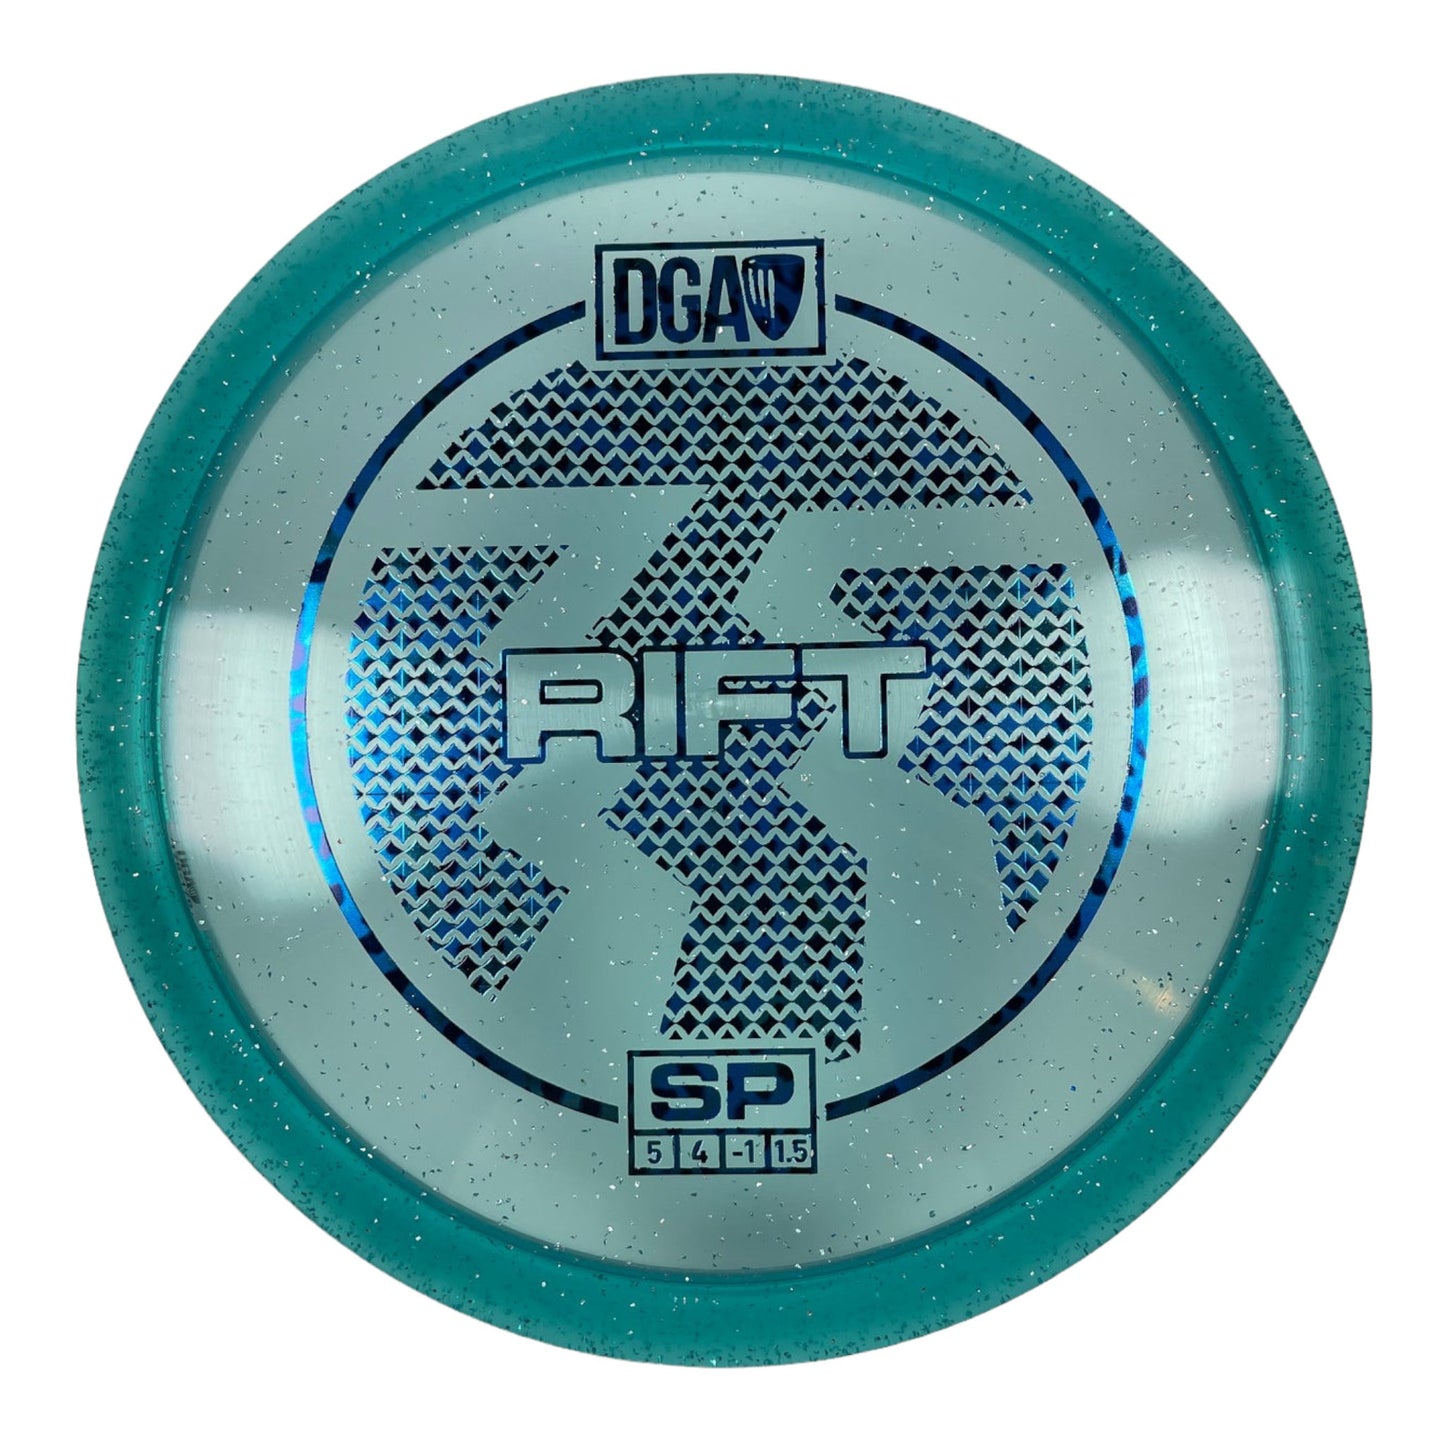 DGA Rift | SP | Sea/Blue 175g Disc Golf